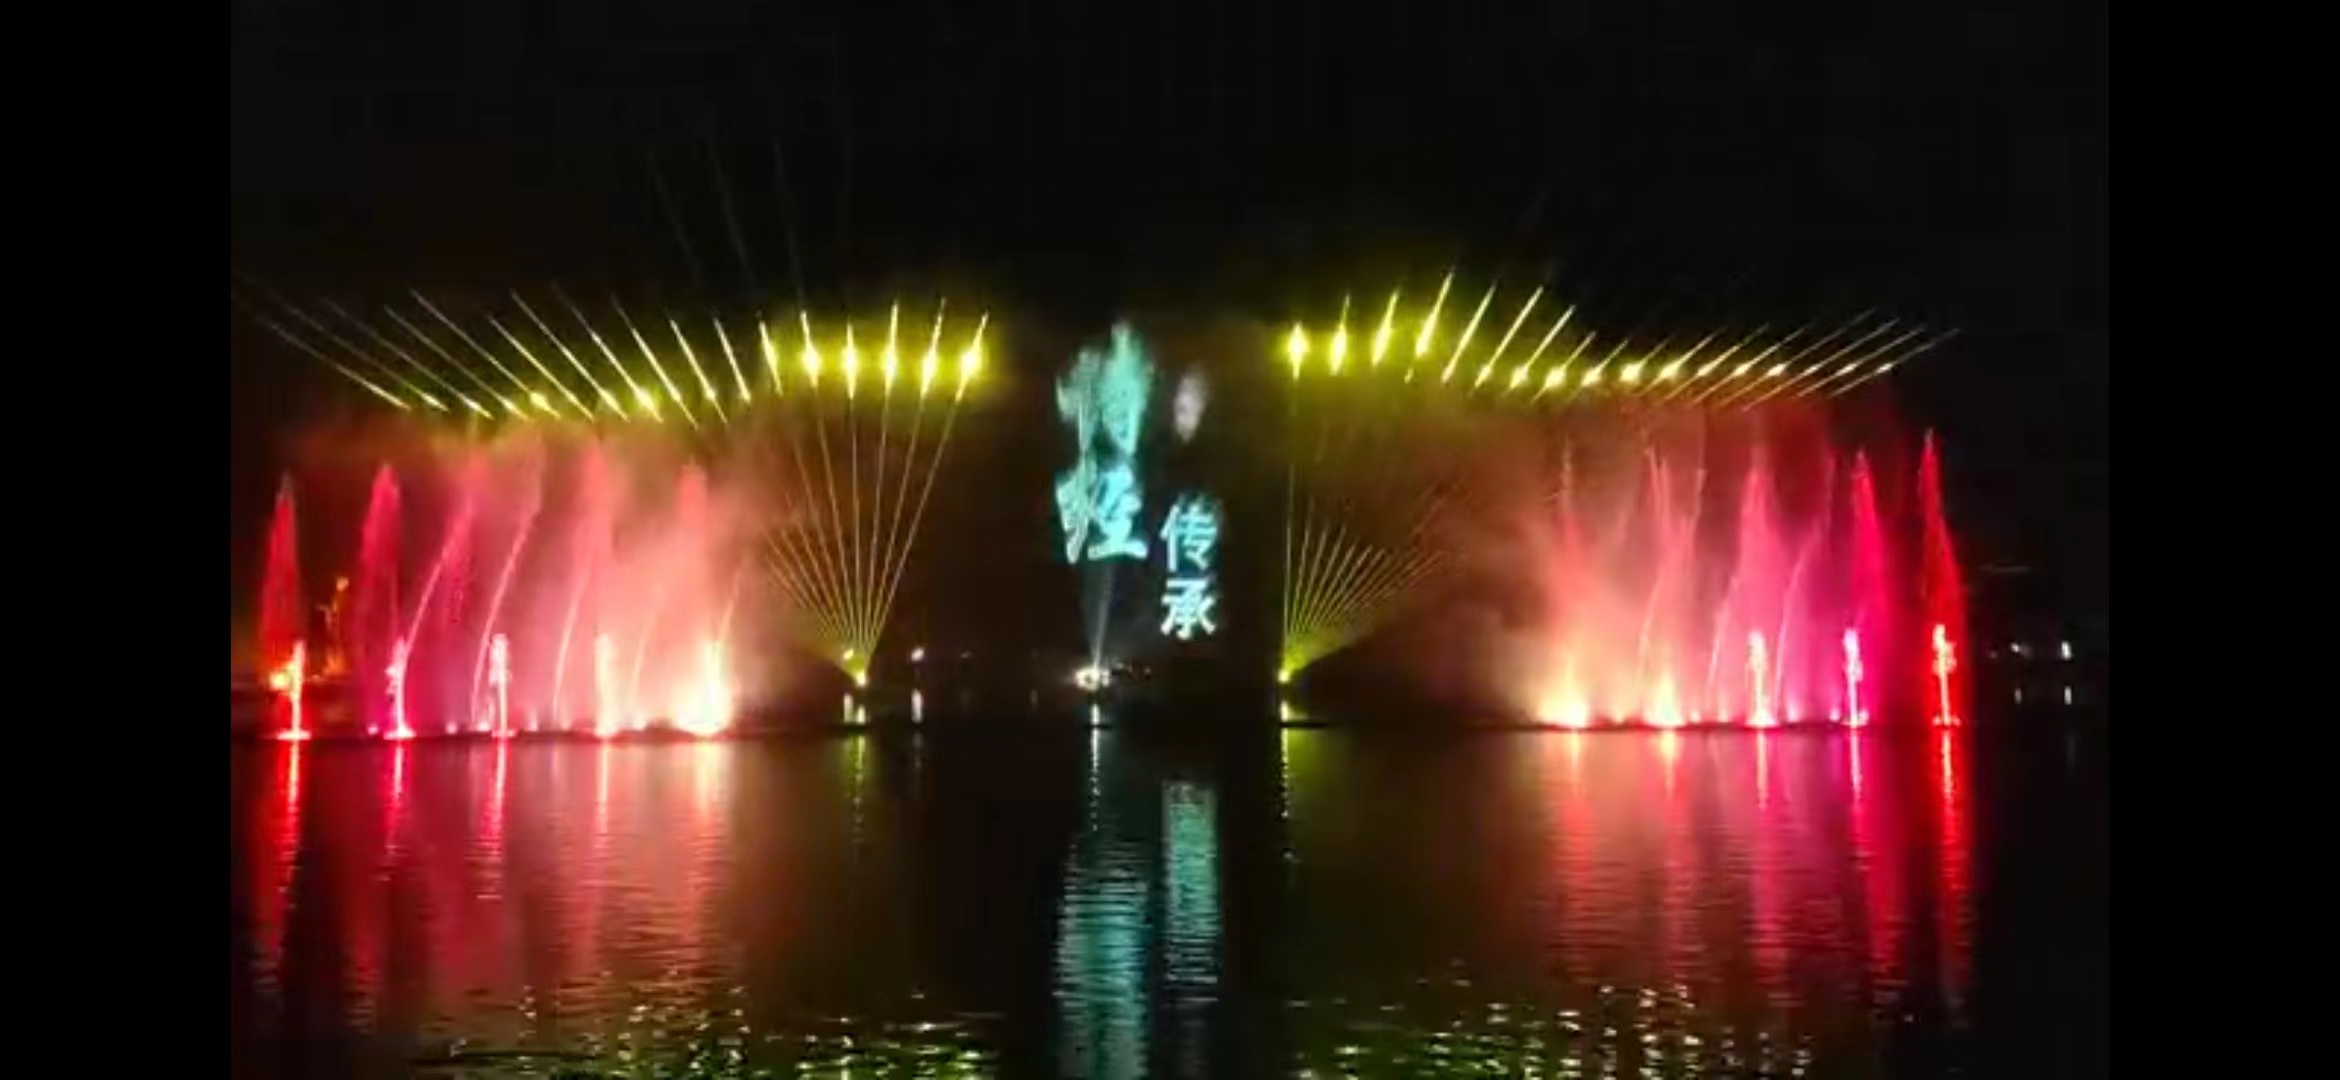 Multimedia Musical Fountain in Shi jing Park, China